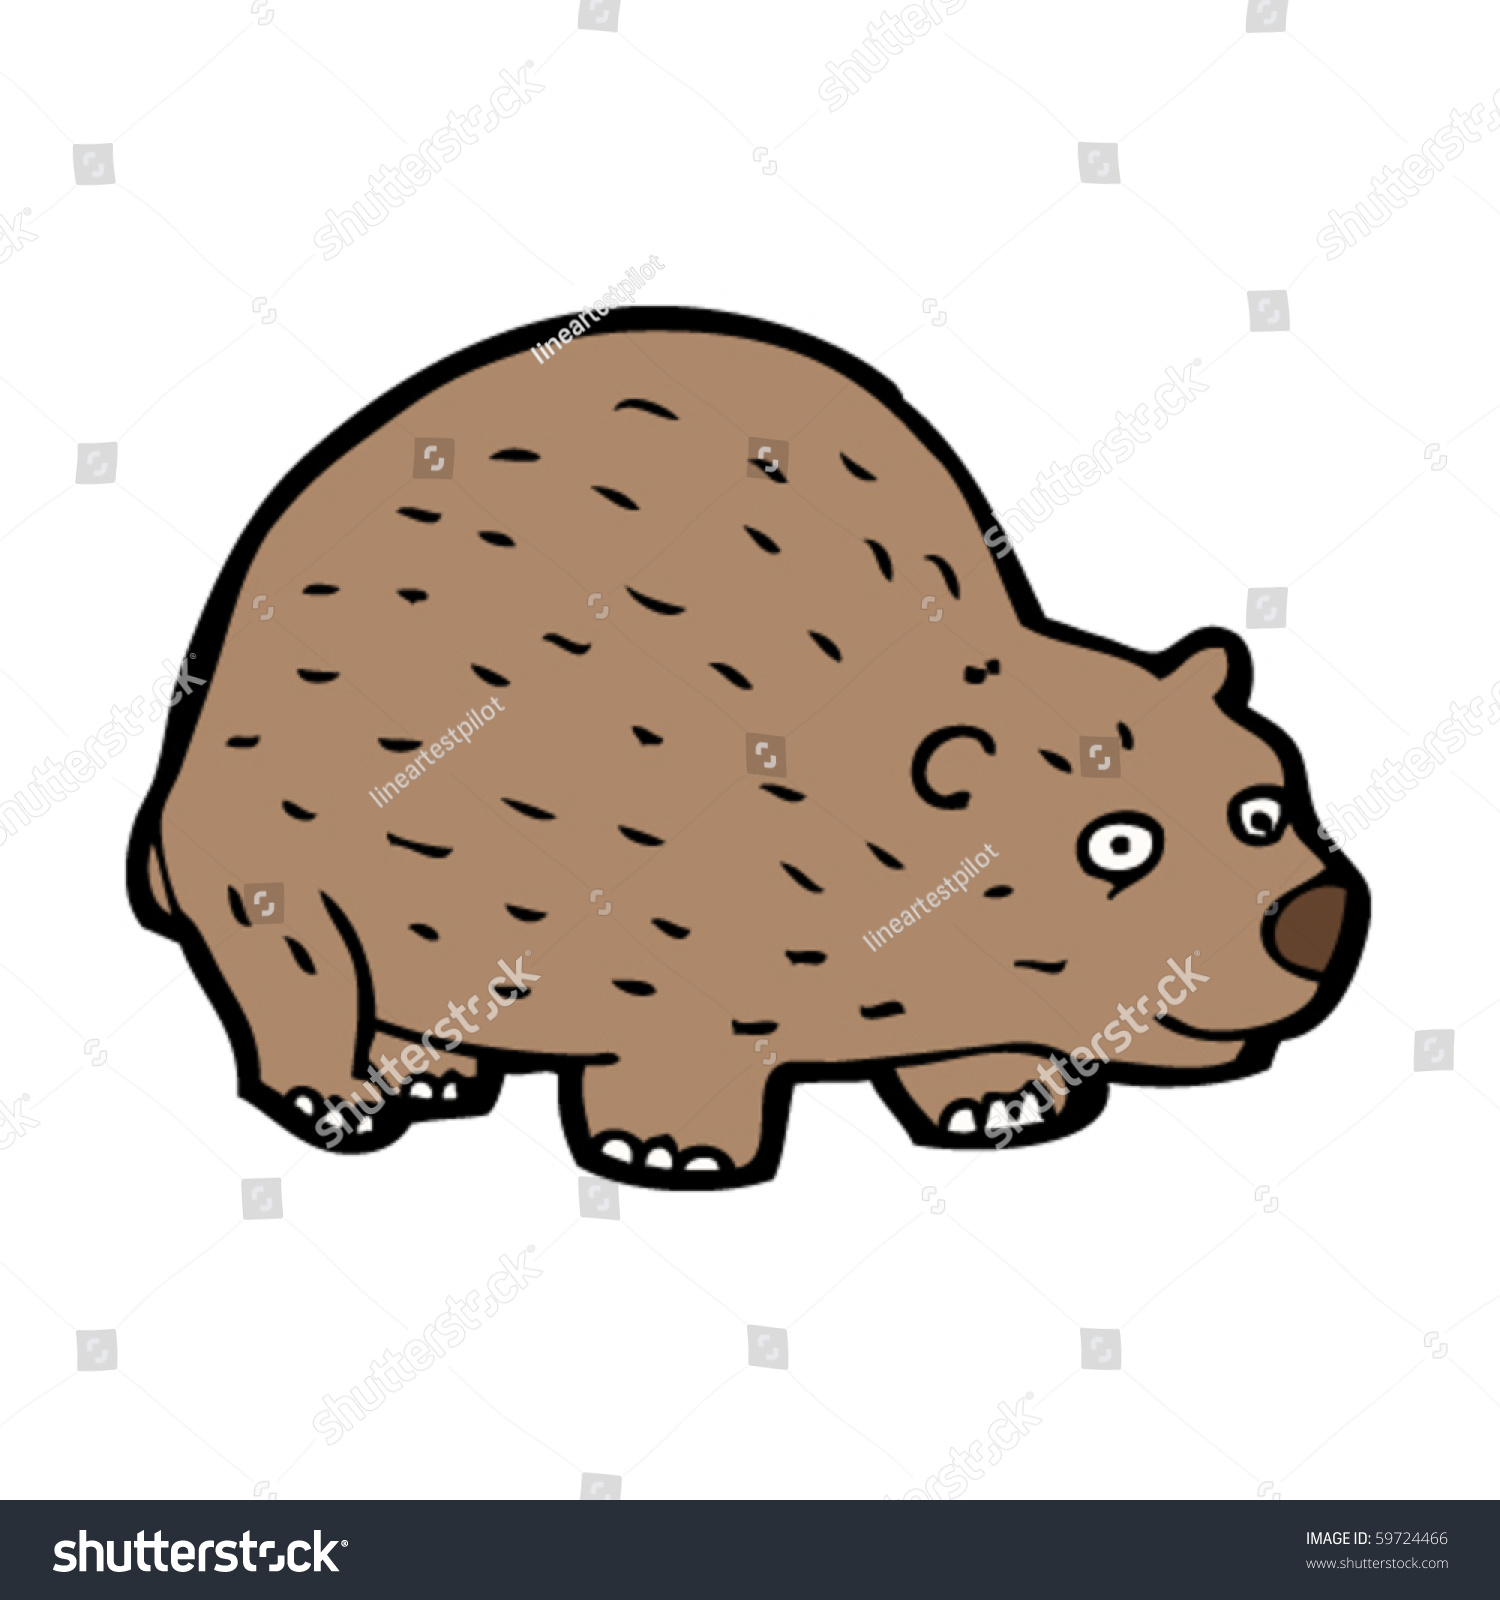 Wombat Cartoon Stock Vector 59724466 - Shutterstock